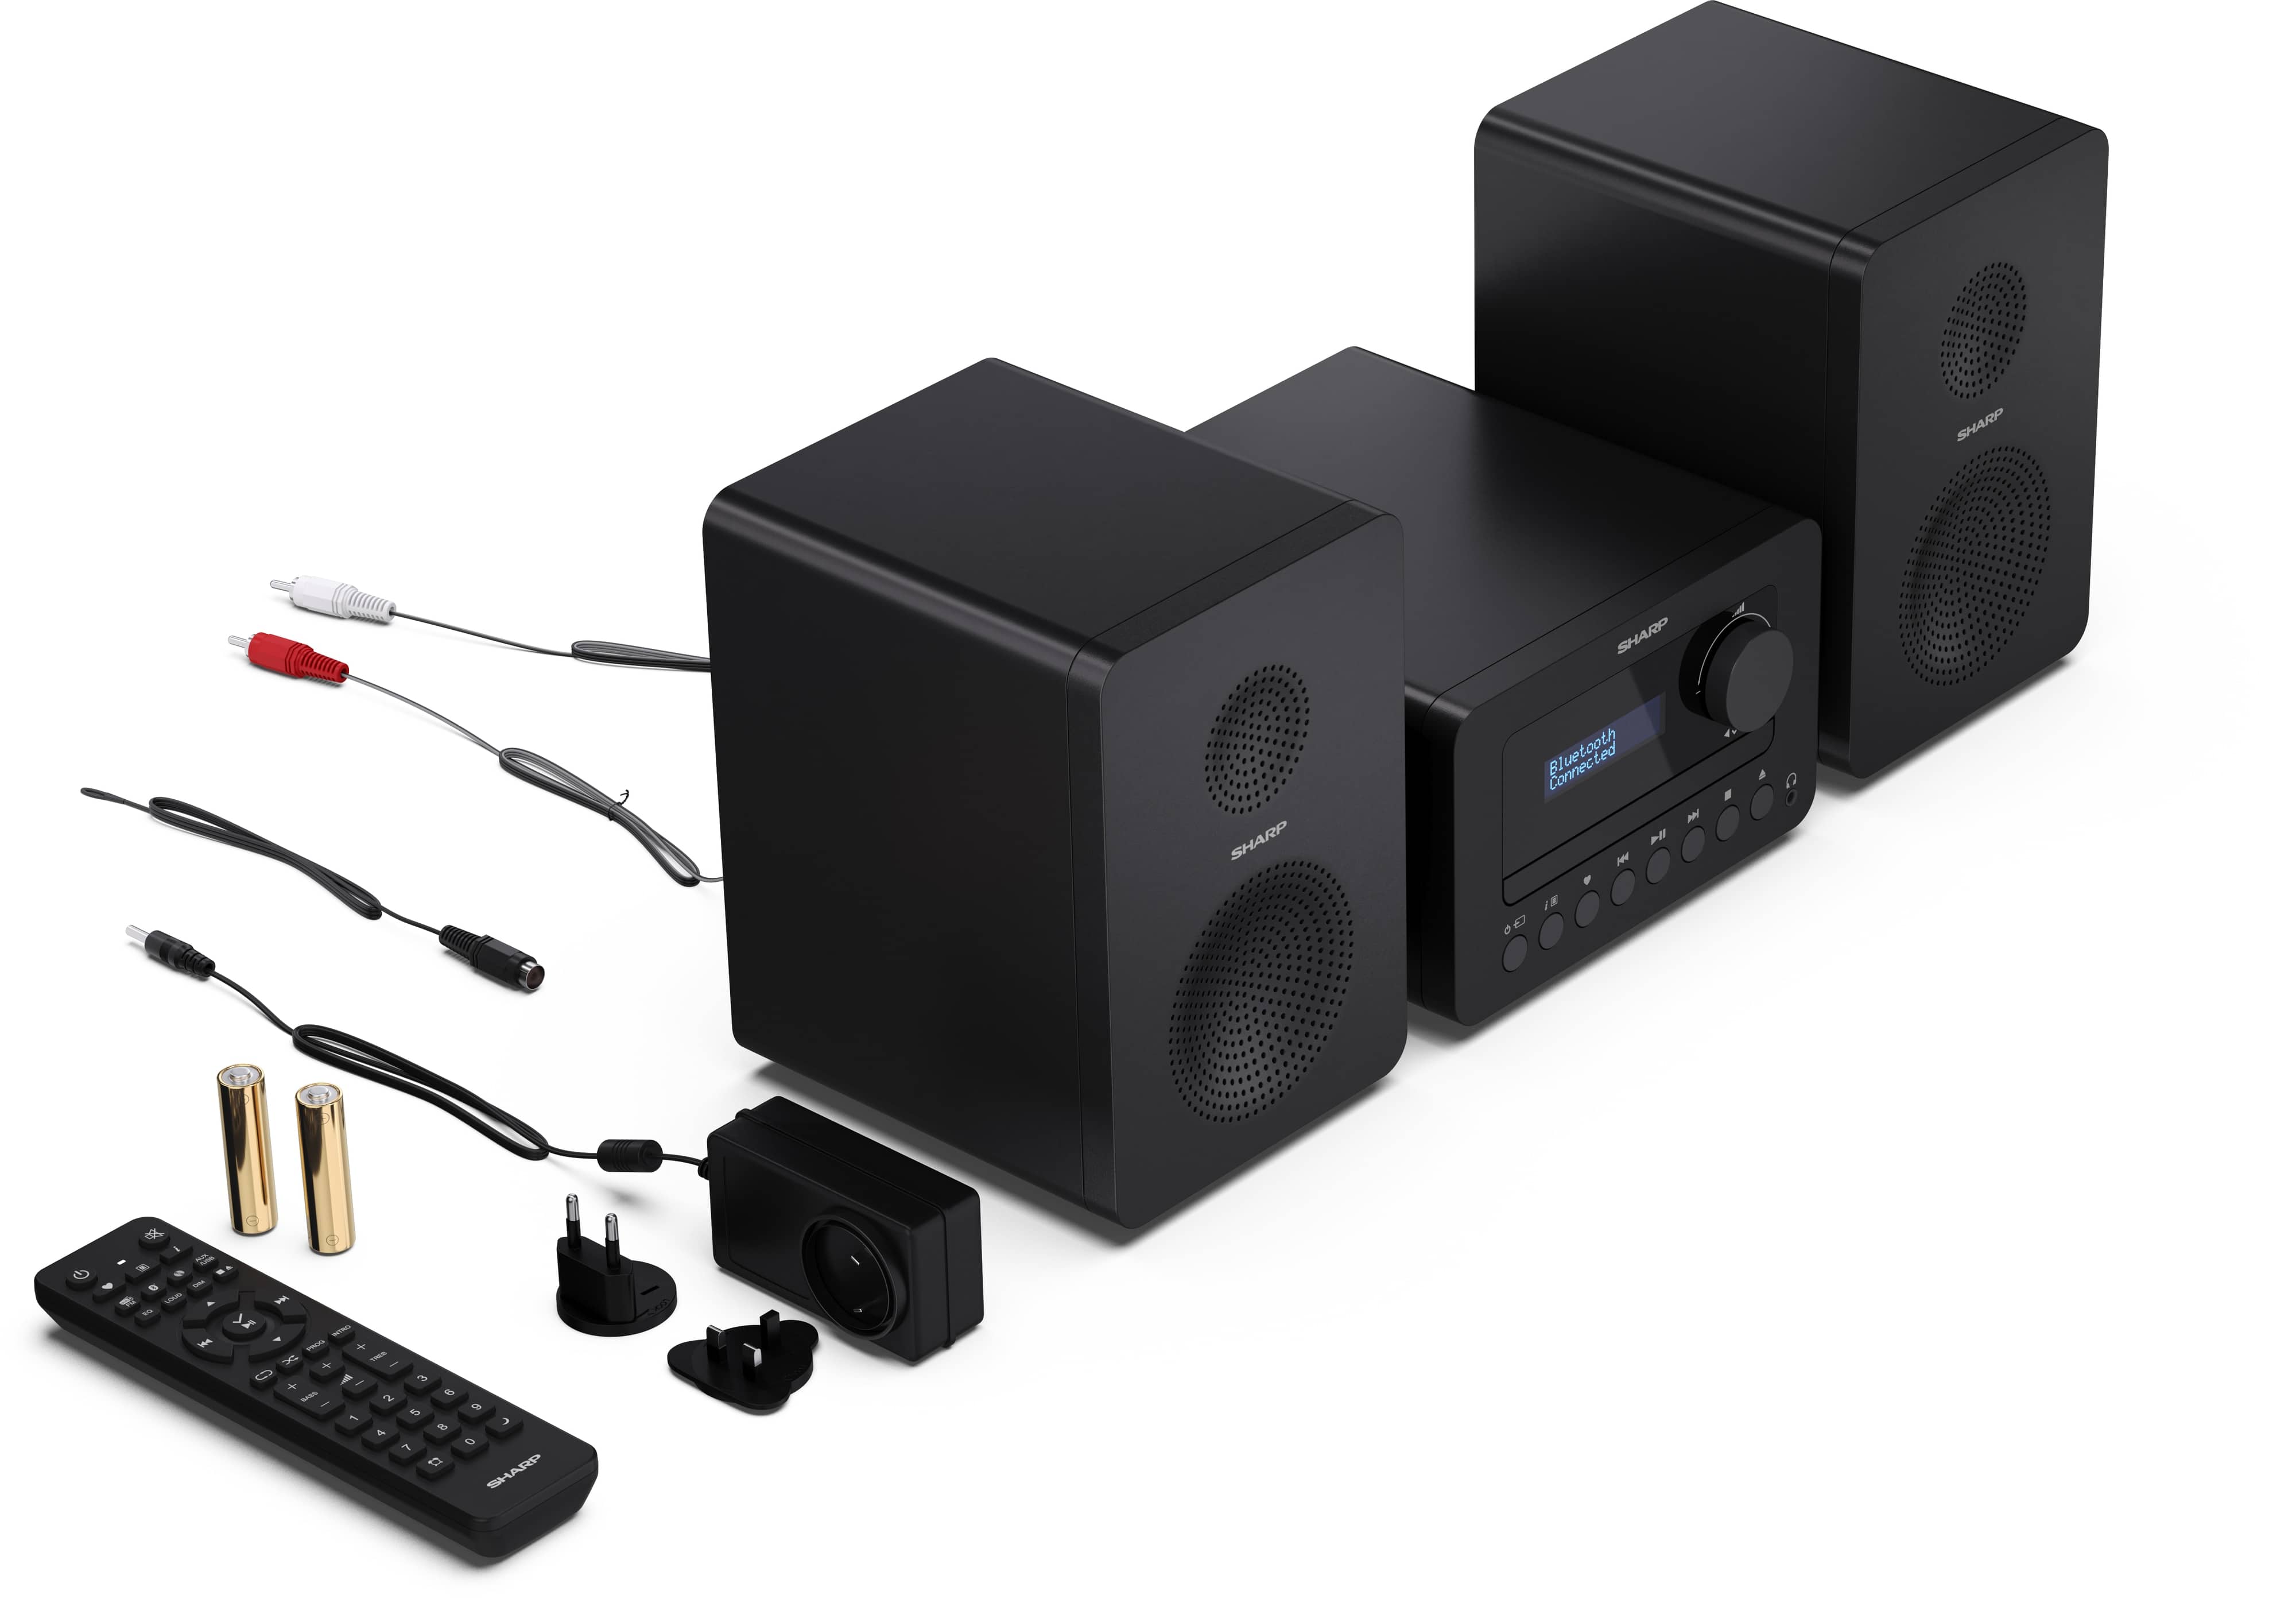 SHARP HiFi-Anlage XL-B520D, schwarz, DAB+, Bluetooth, MP3, CD-Laufwerk